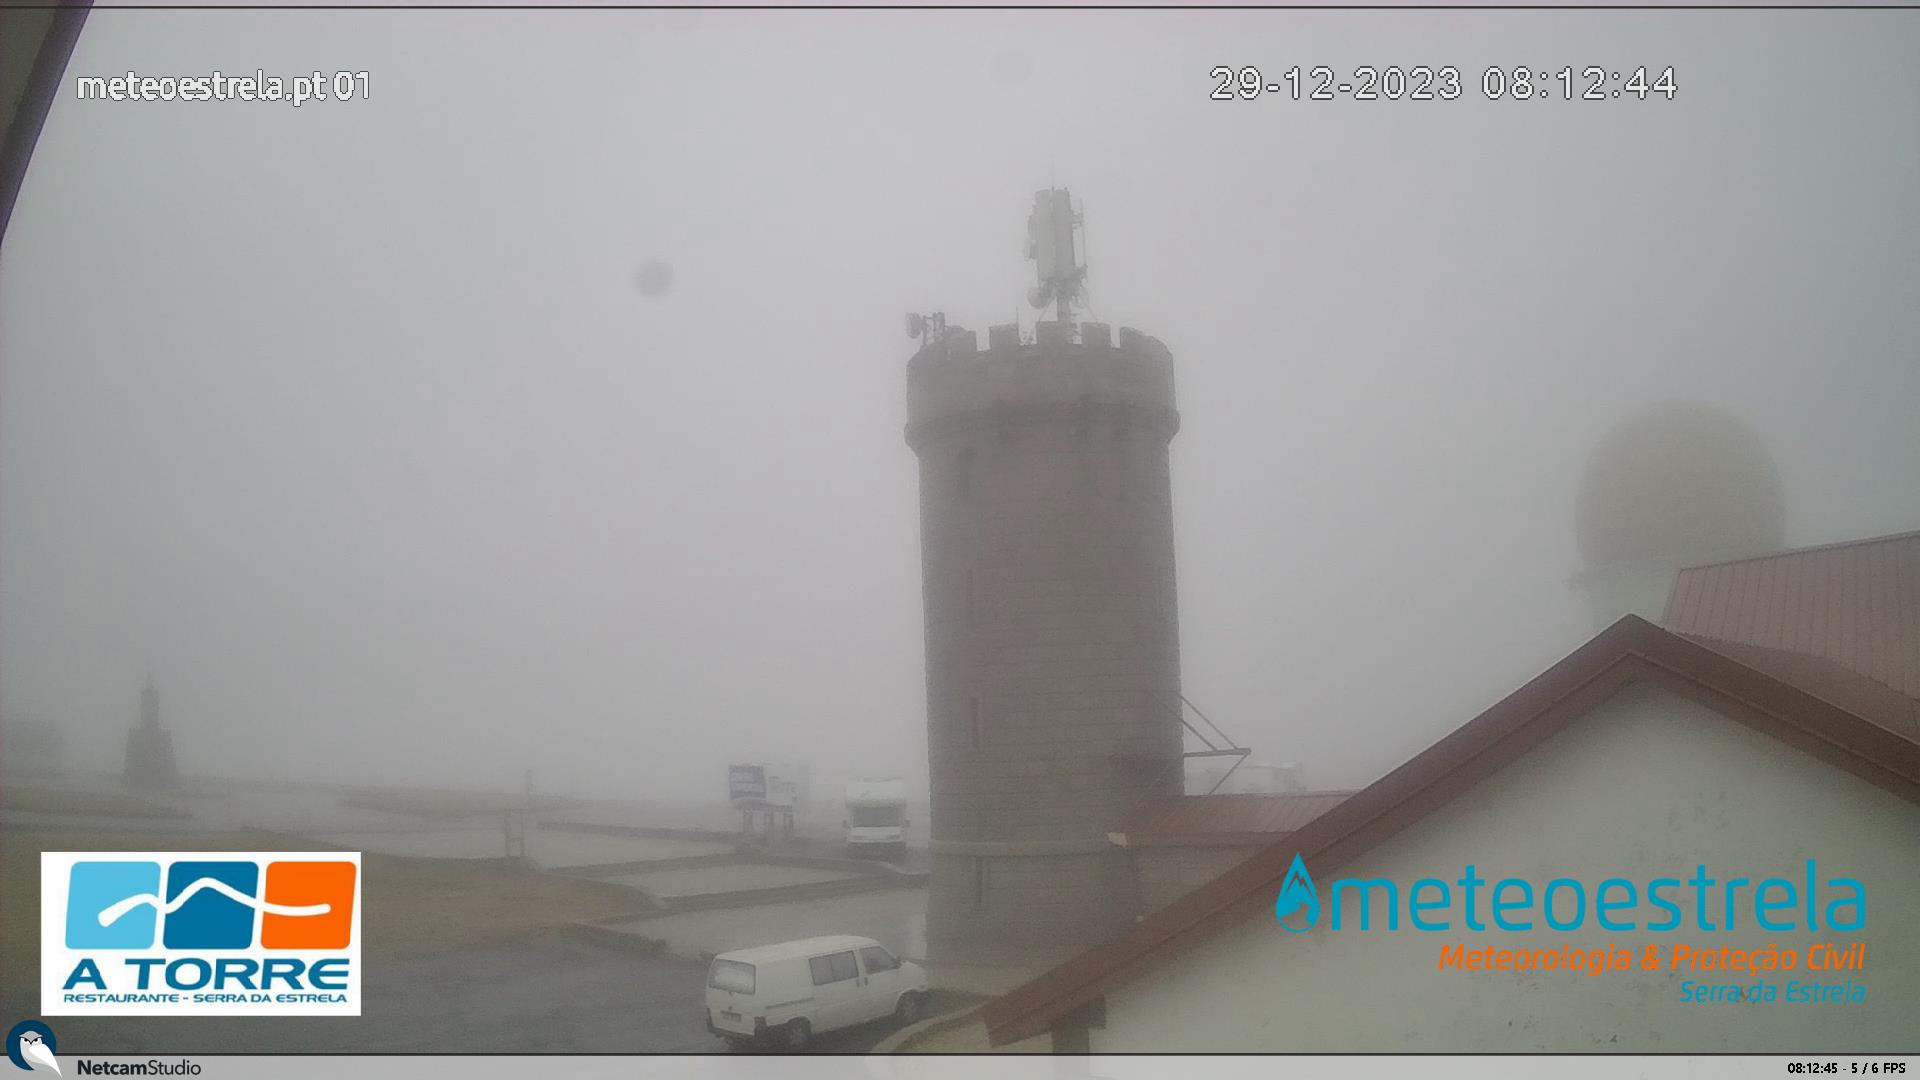 Webcam en Torre - Panorama